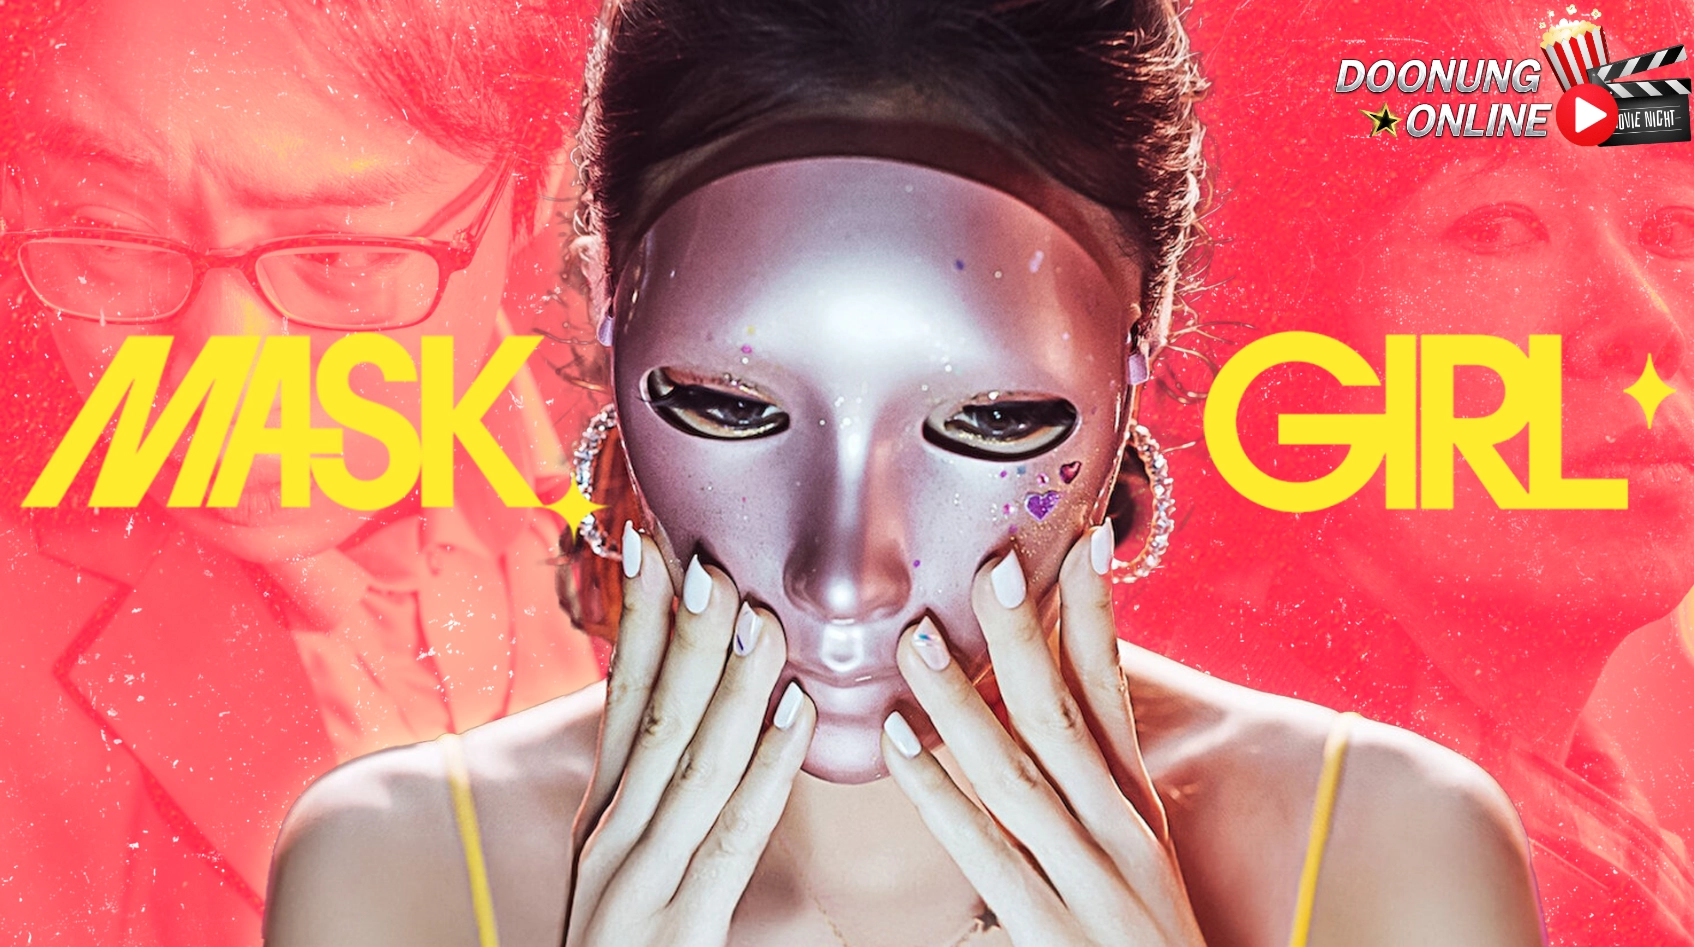 รีวิวซีรี่ย์เกาหลี Mask Girl : ซีรี่ย์ตลกร้ายภายใต้หน้ากากรอยยิ้มของผู้คน